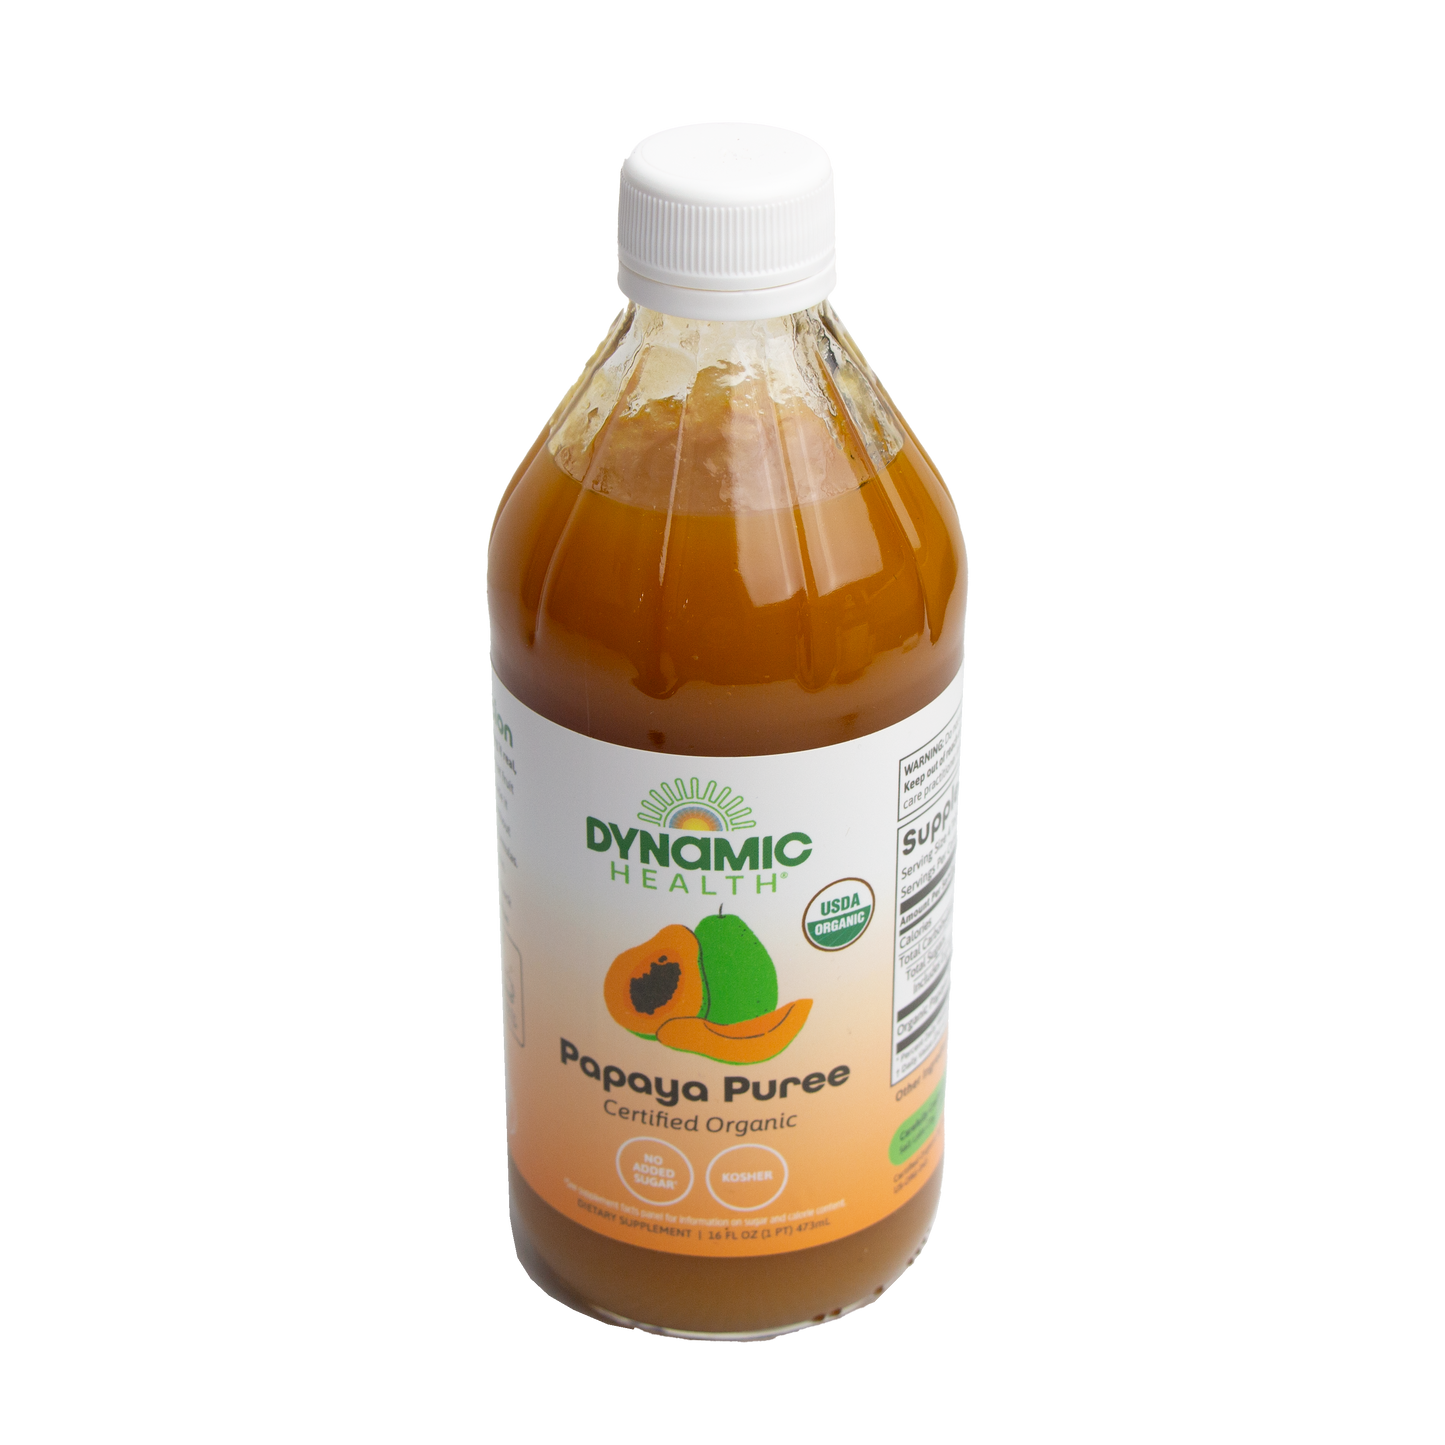 Dynamic Health - Papaya Puree